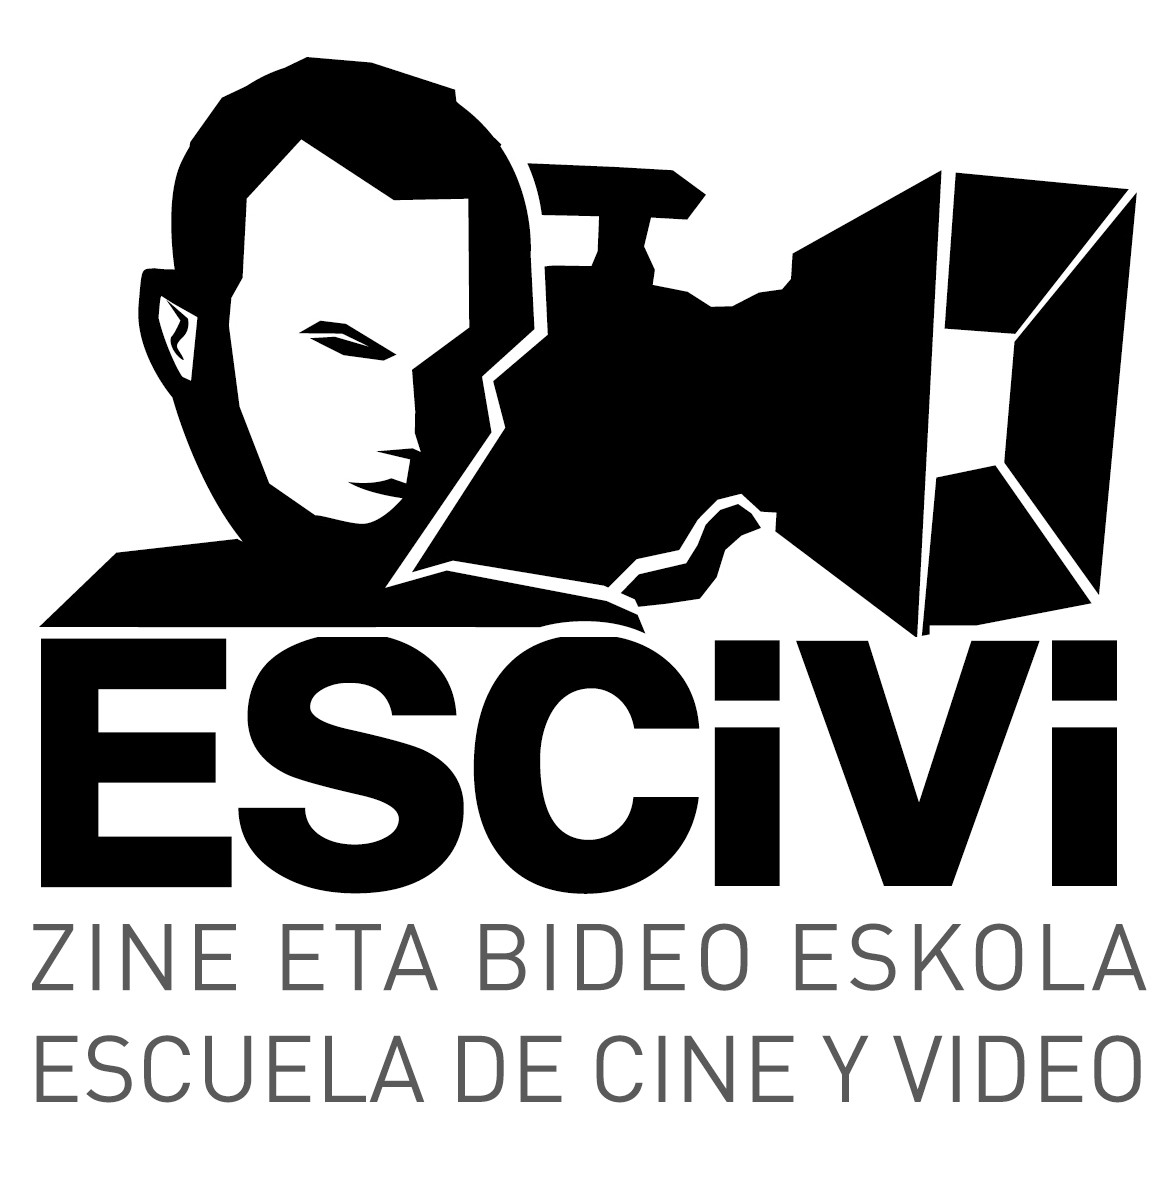 ESCIVI - Escuela de Cine y Vídeo